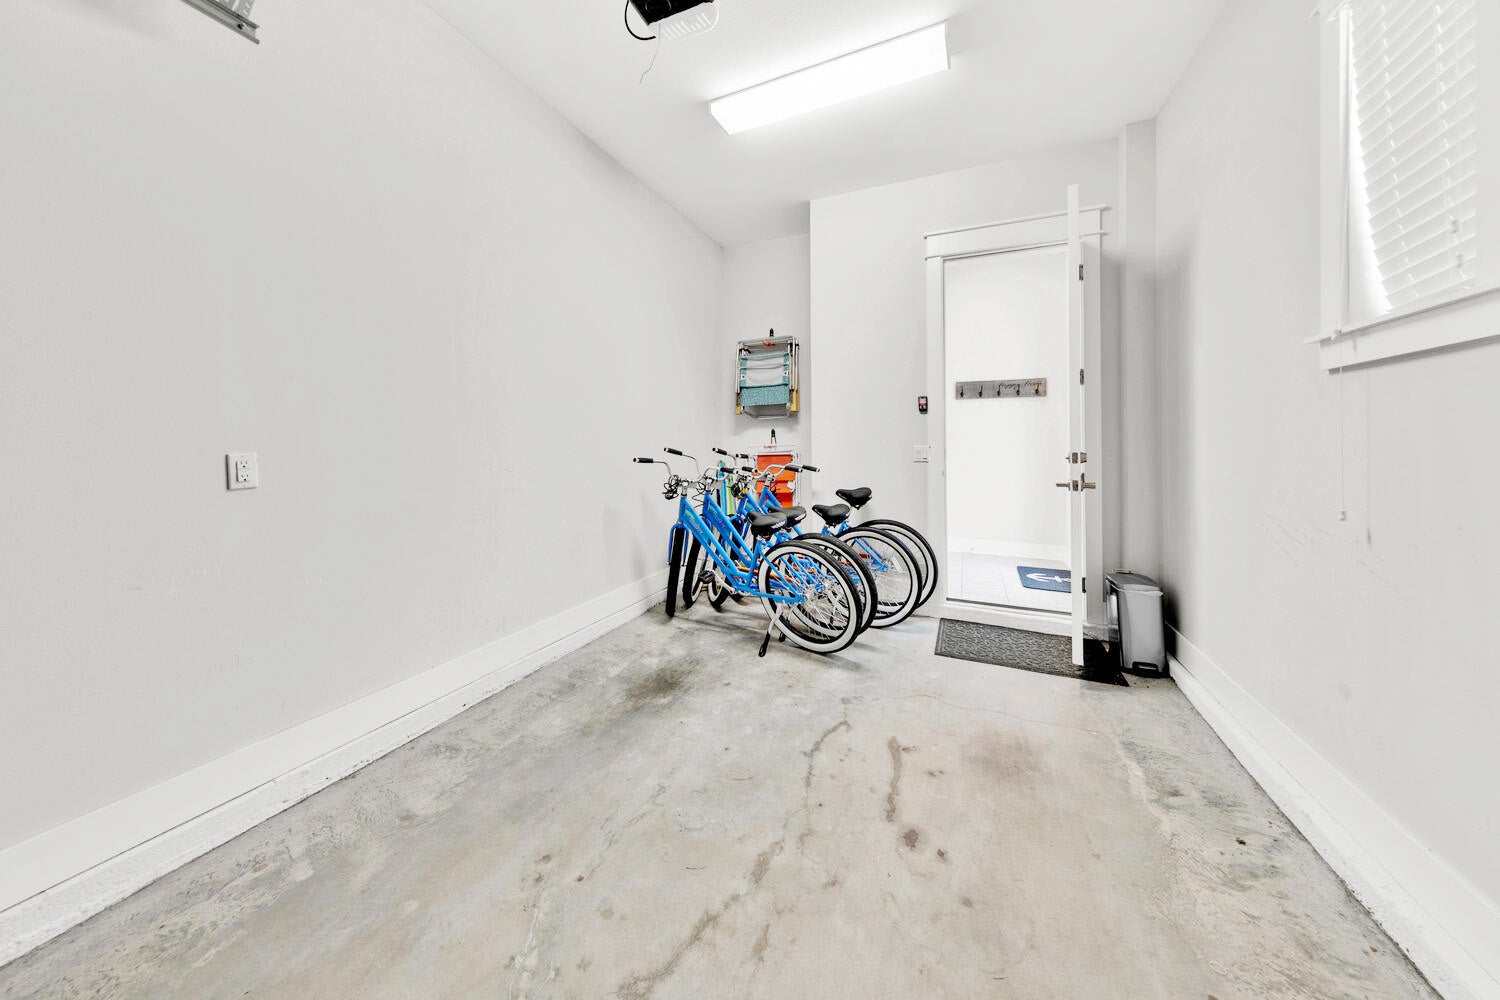 Garage with bikes!